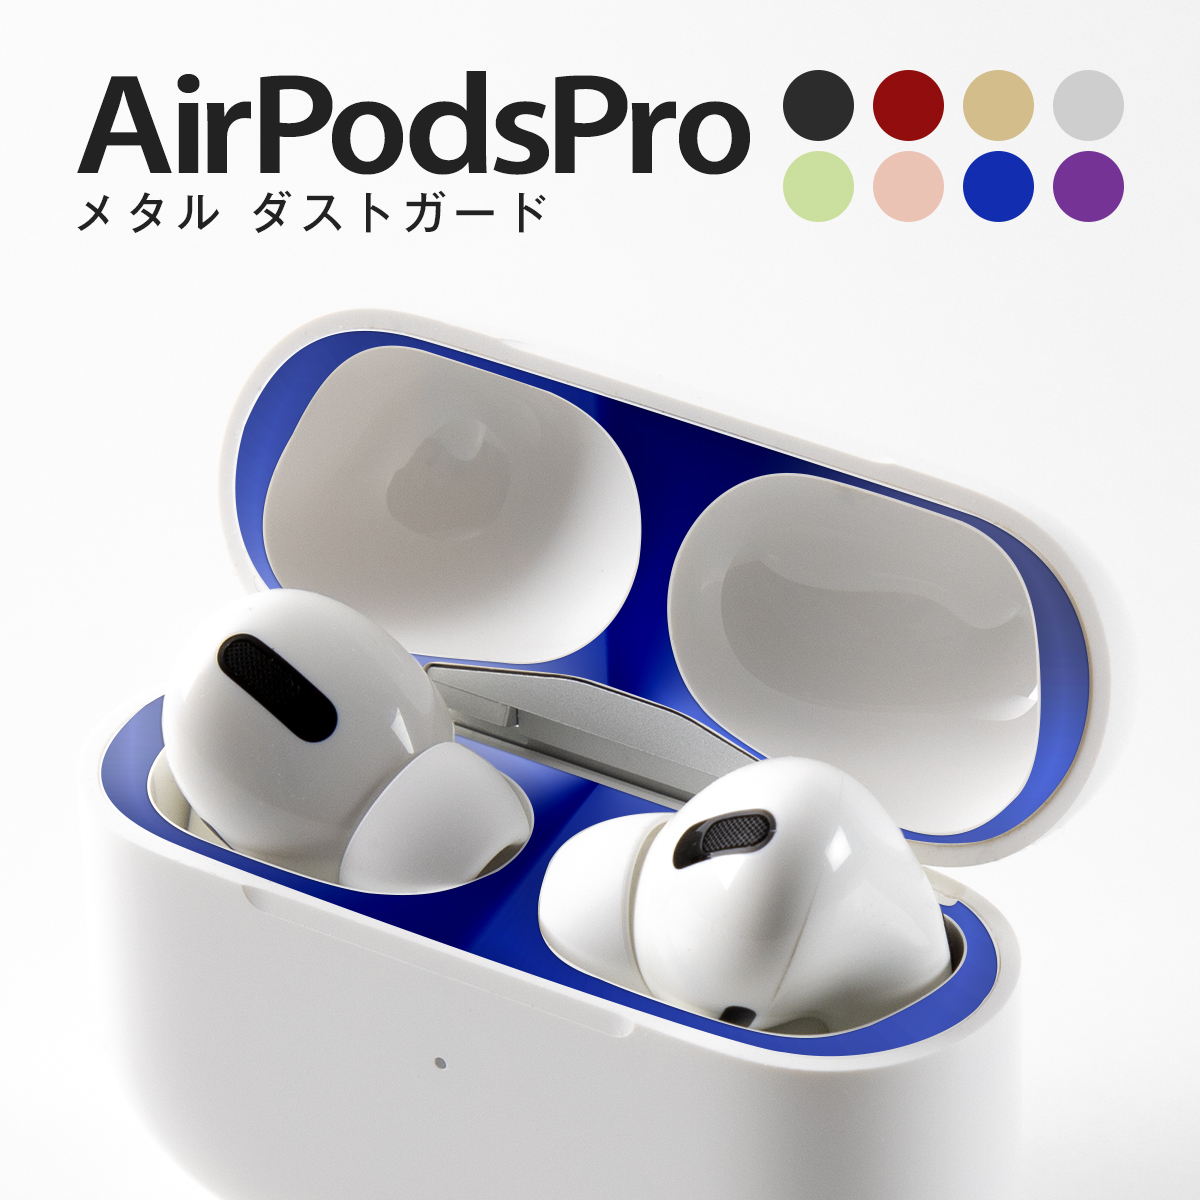 AirPods Pro ダスト ガード パープル シール エアー ポッズ プロ